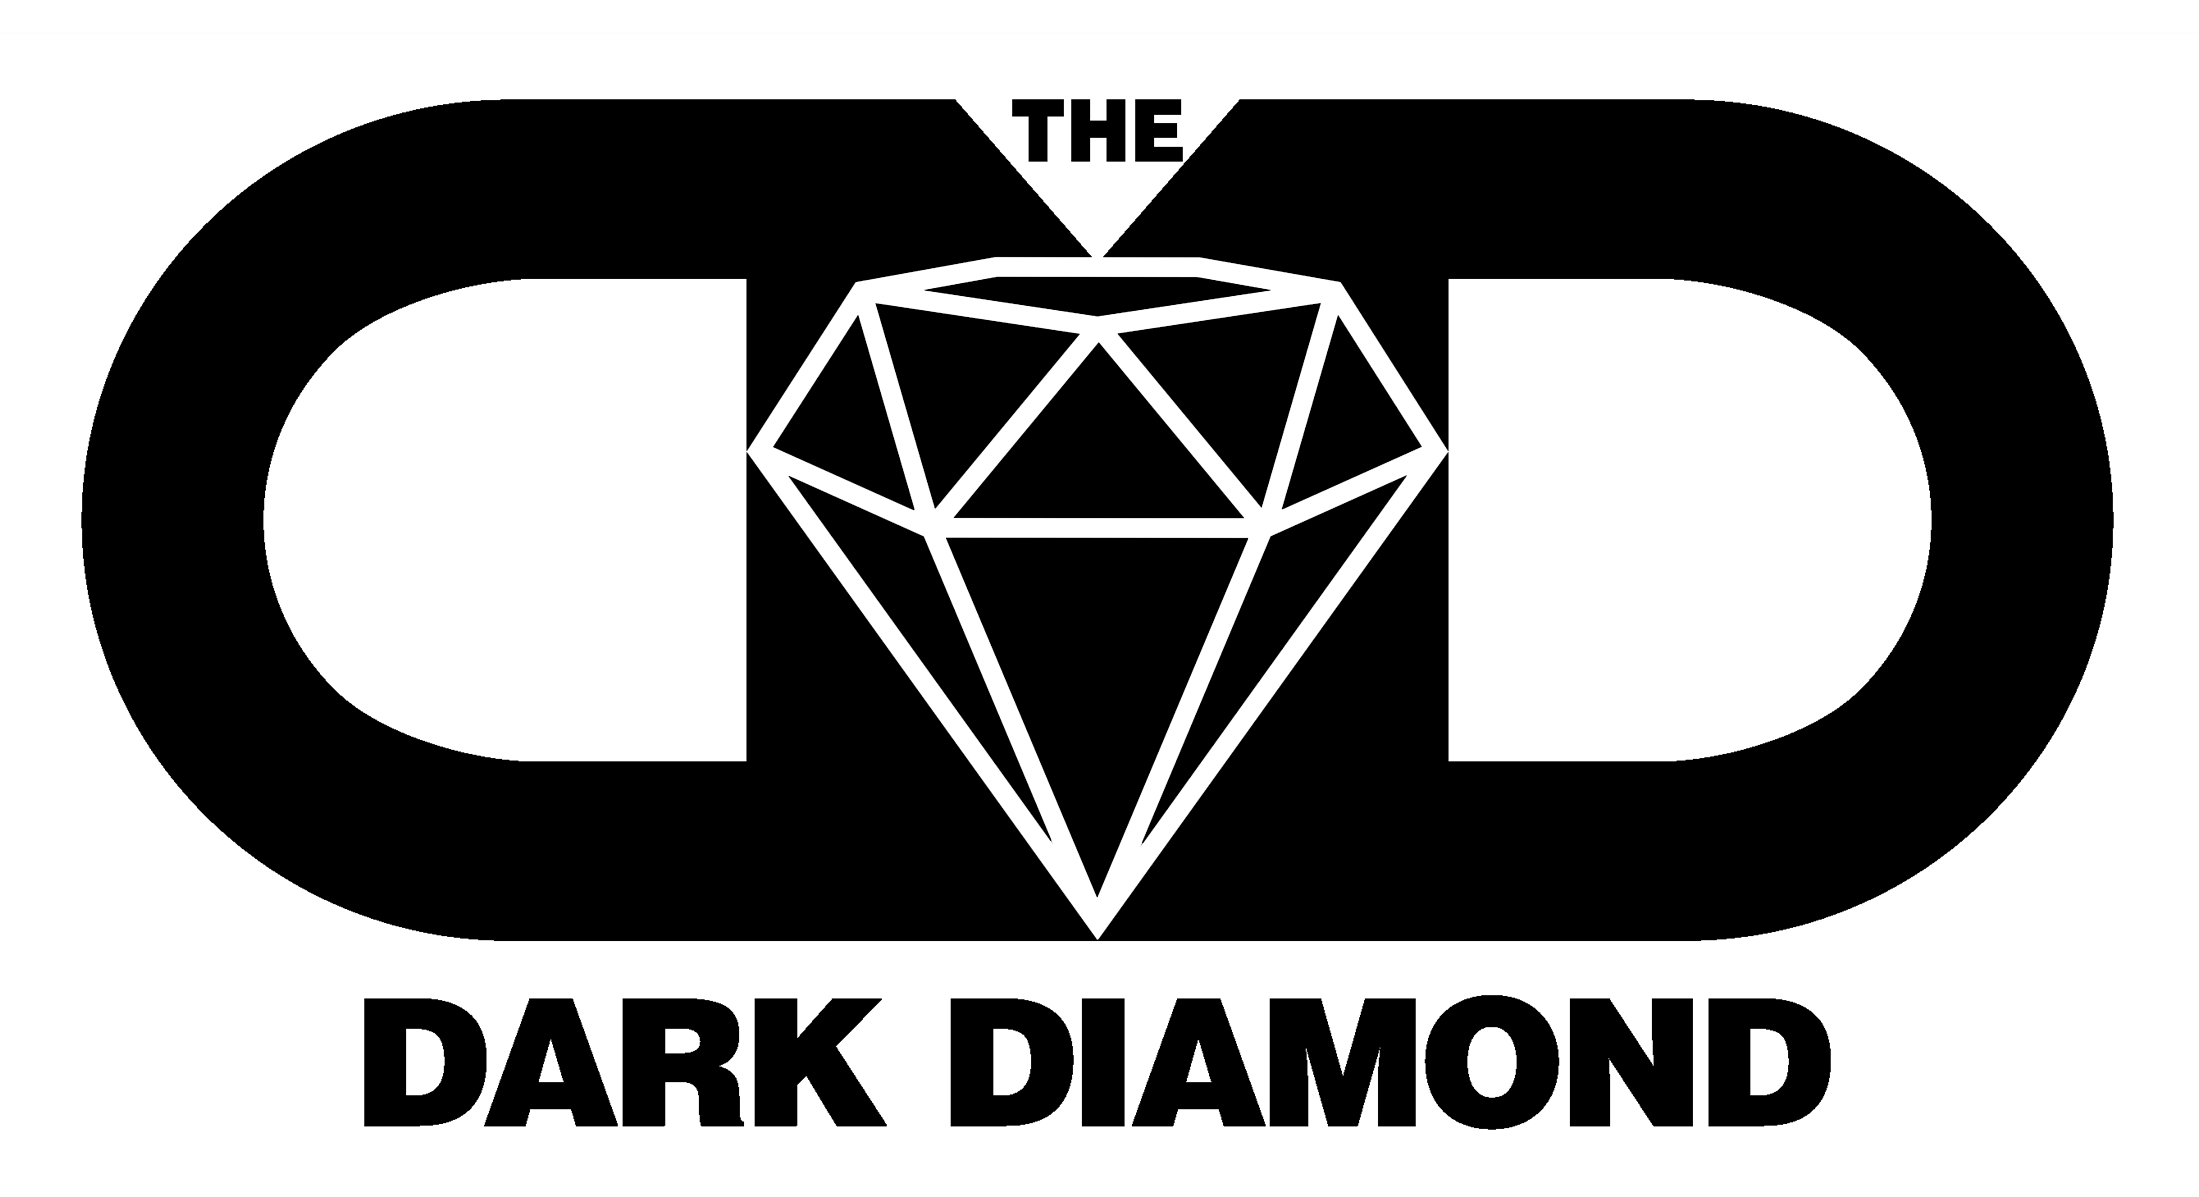 Dark Diamond Logo - The Dark Diamond - The Smoking Wholesale Shop